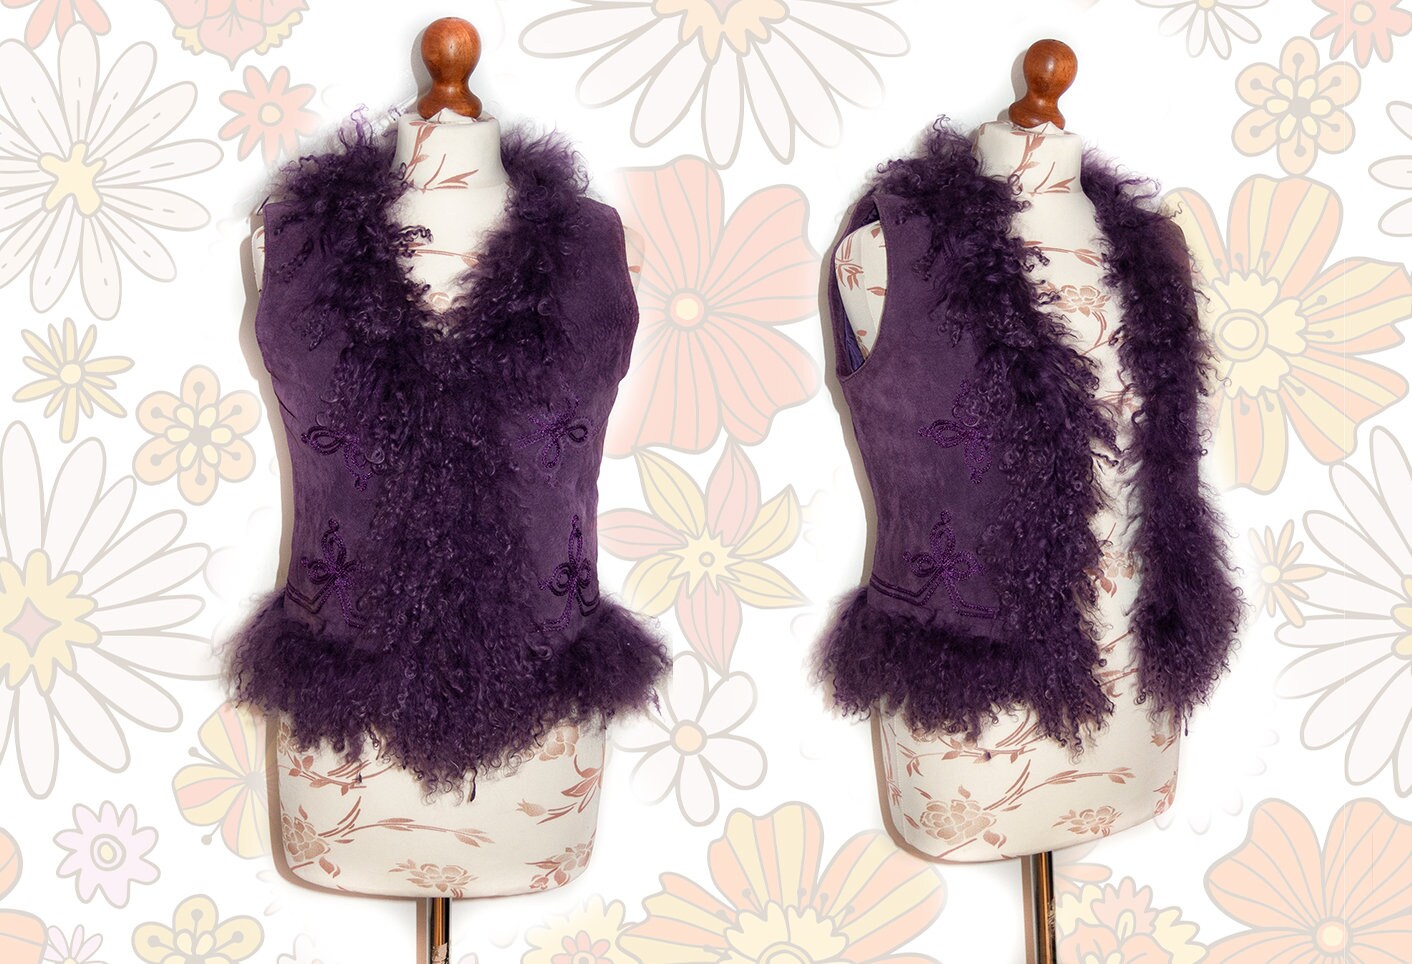 Dusty Lilac Mongolian Sheep Wool 2-3 Inches Long Pile Faux Fur